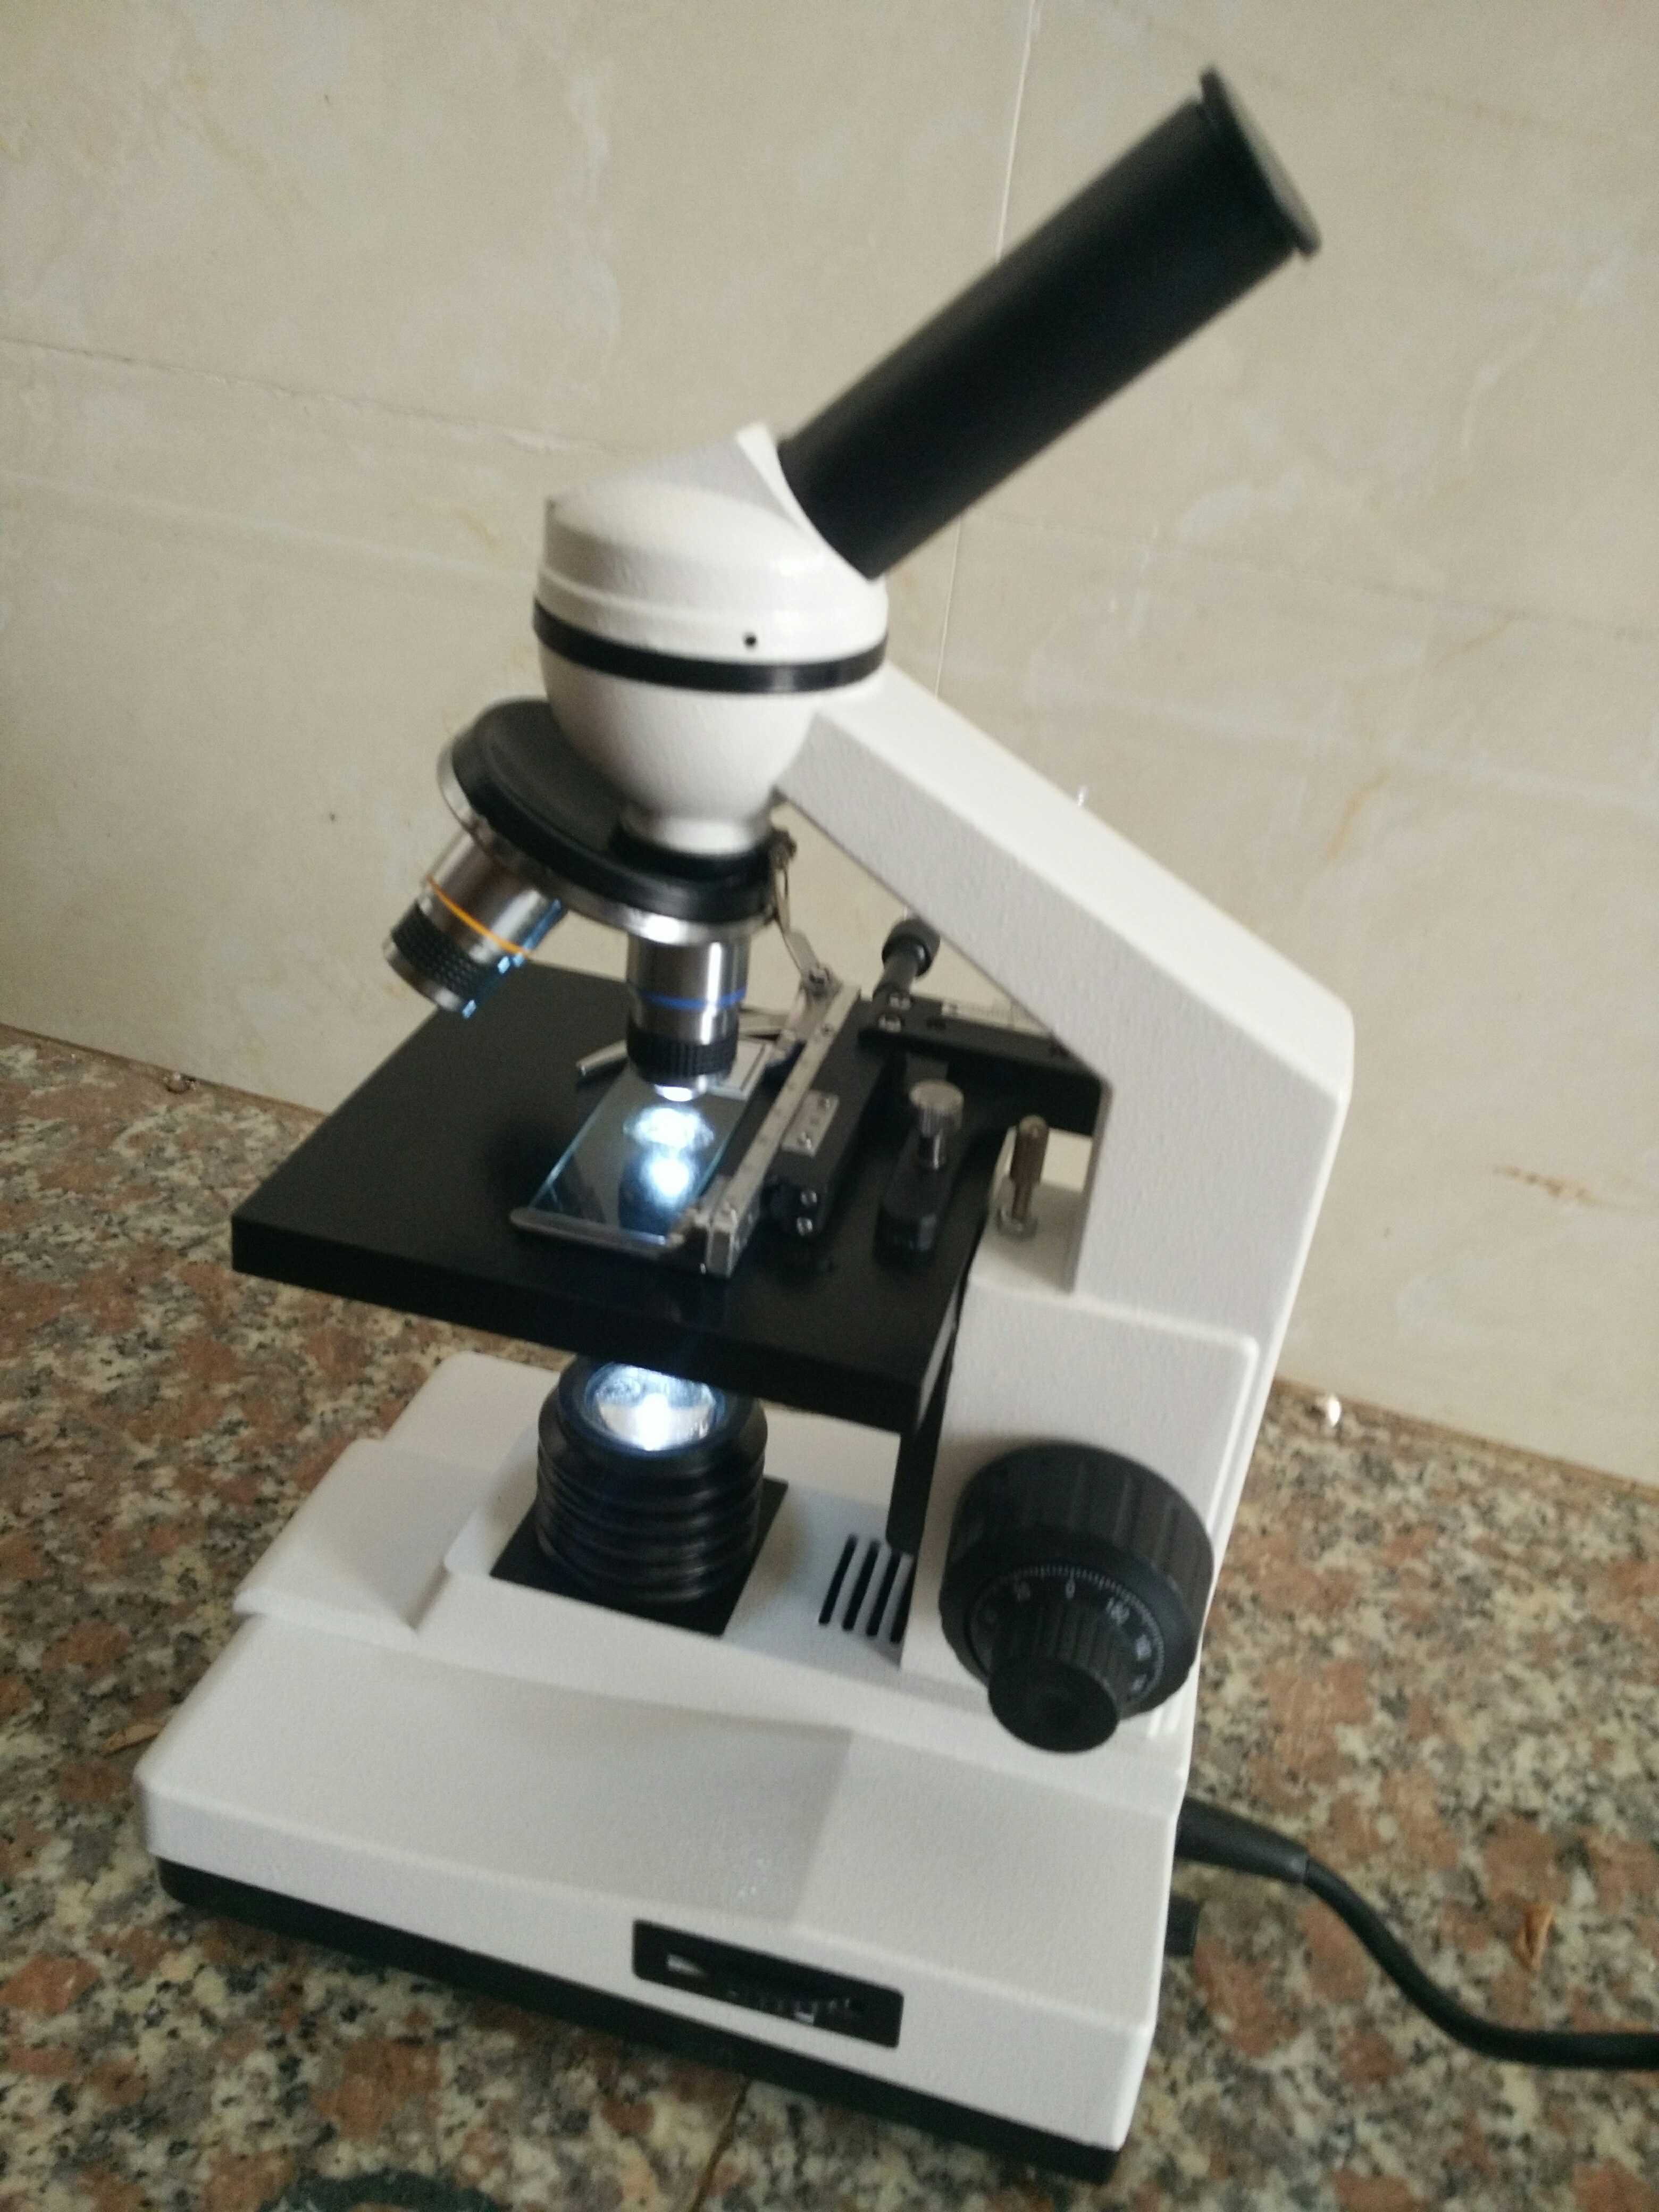 郑州 生物显微镜 郑州 生物显微镜报价 郑州生物显微镜报价